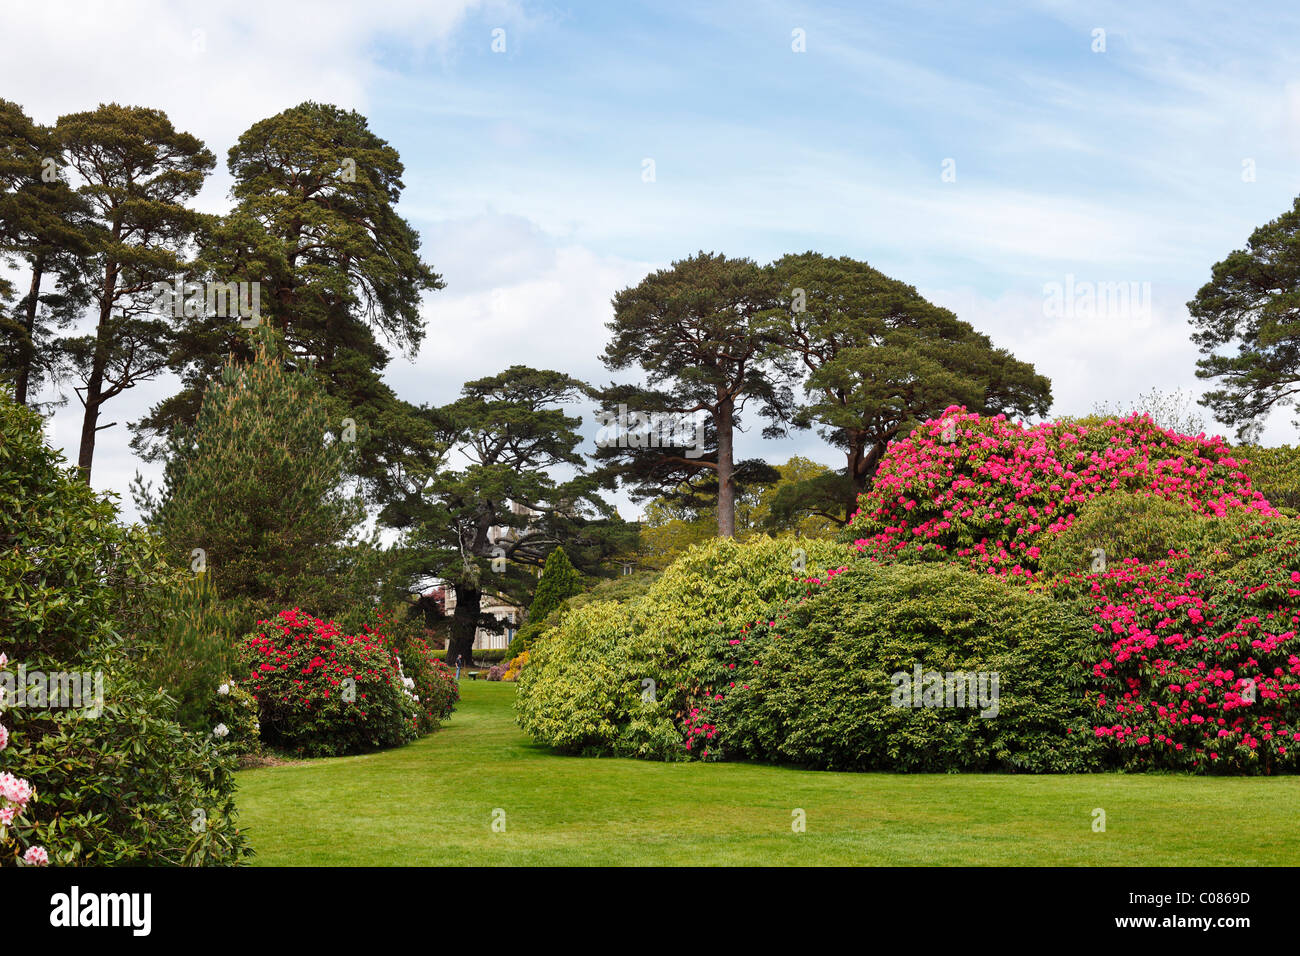 Les Jardins de Muckross au printemps, la floraison des buissons de rhododendrons, le Parc National de Killarney, comté de Kerry, Irlande, Iles britanniques Banque D'Images